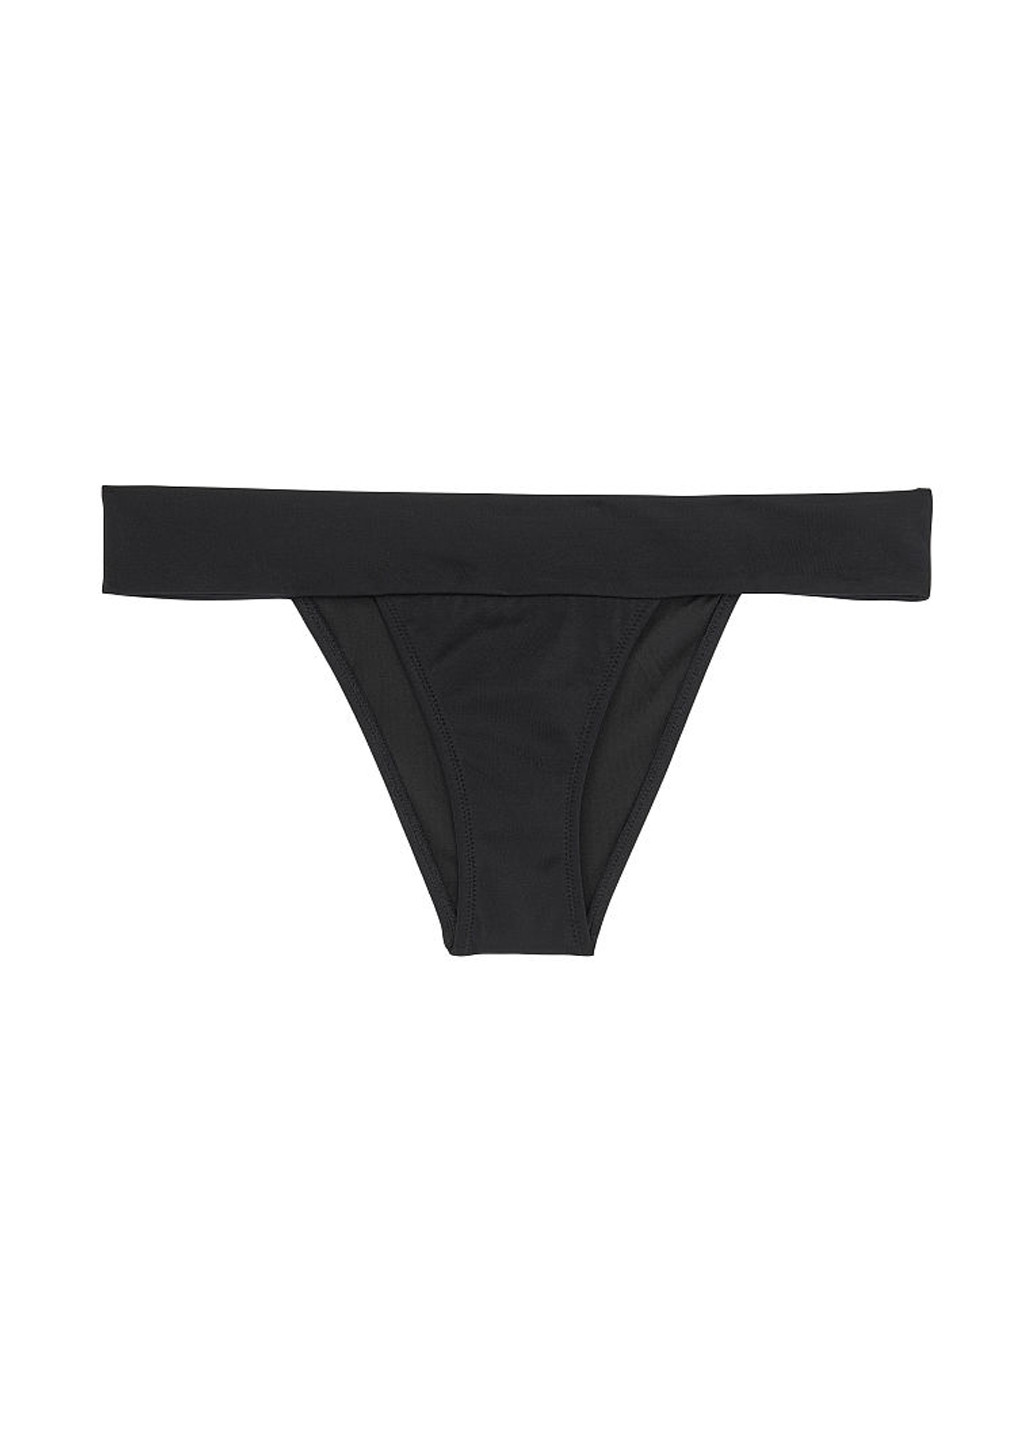 Черный летний купальник (лиф, трусы) раздельный, бикини Victoria's Secret